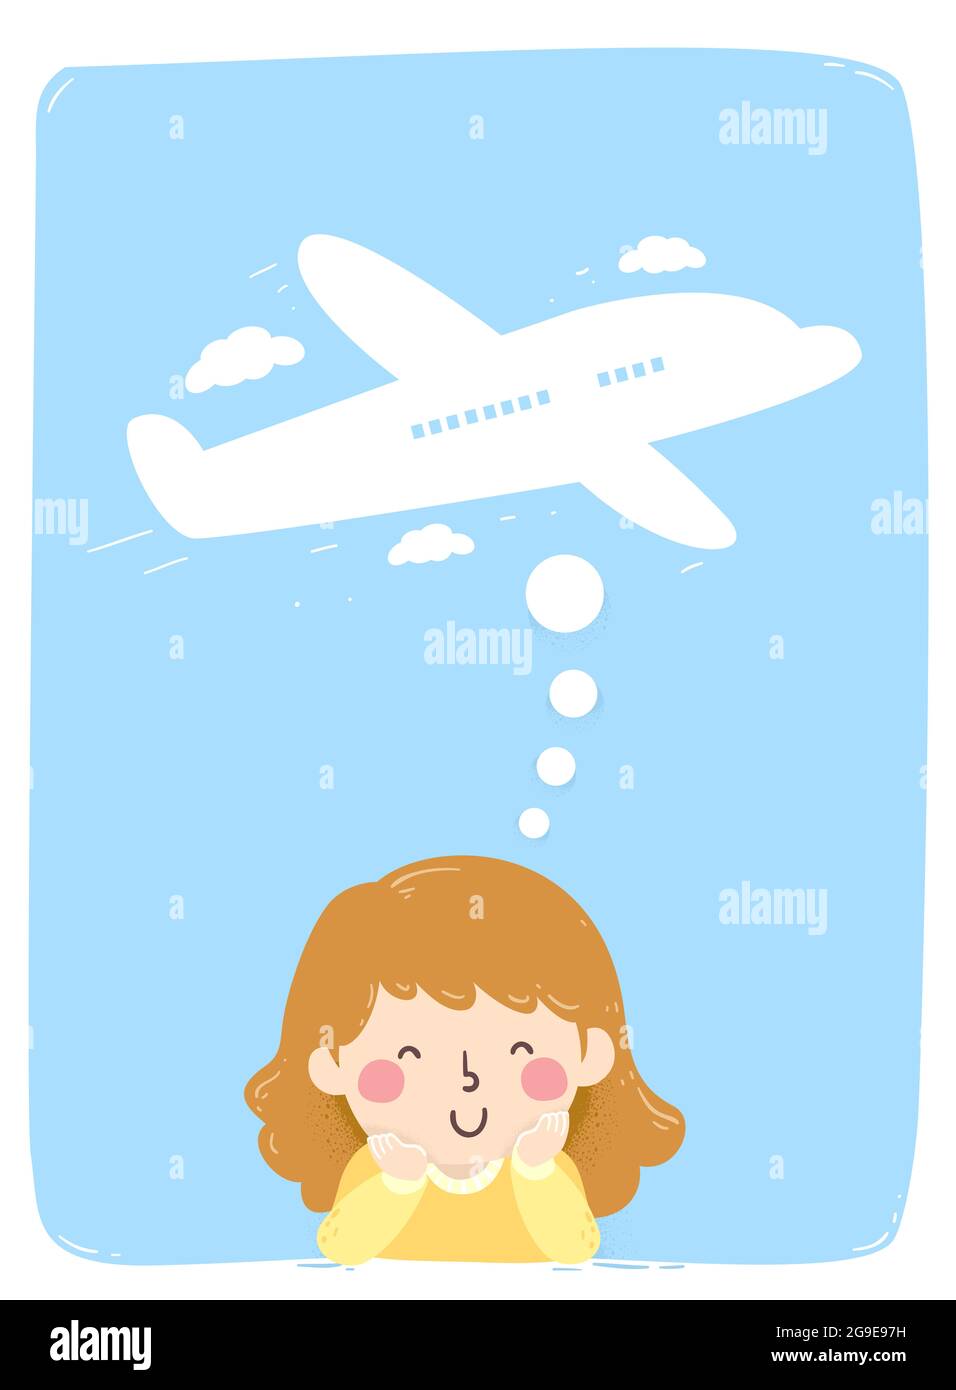 Illustration eines Mädchens, das für das Reisen an ein Flugzeug denkt Stockfoto